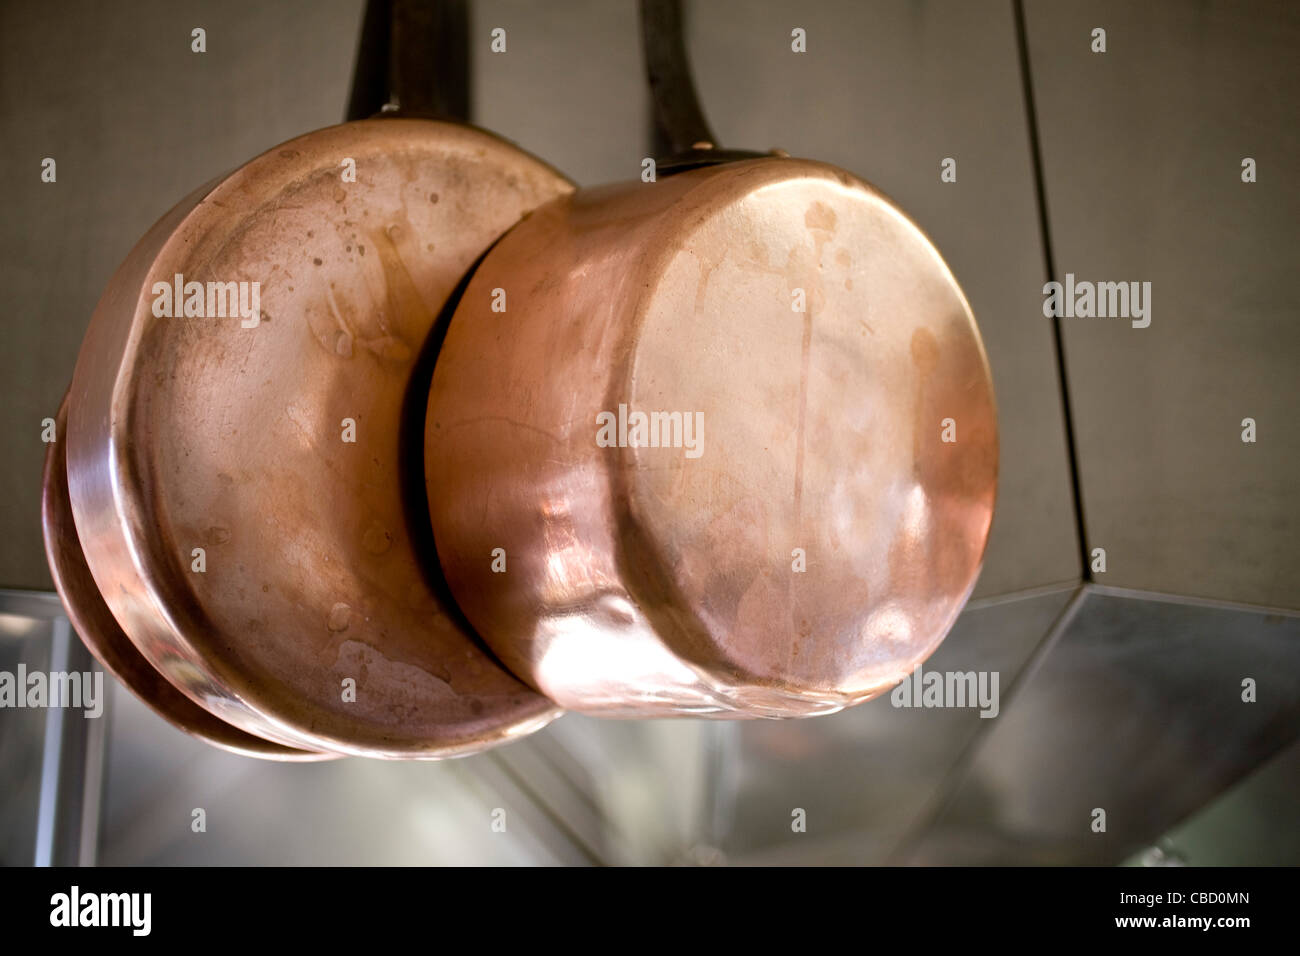 Sartenes de cobre que cuelgan en la cocina Foto de stock